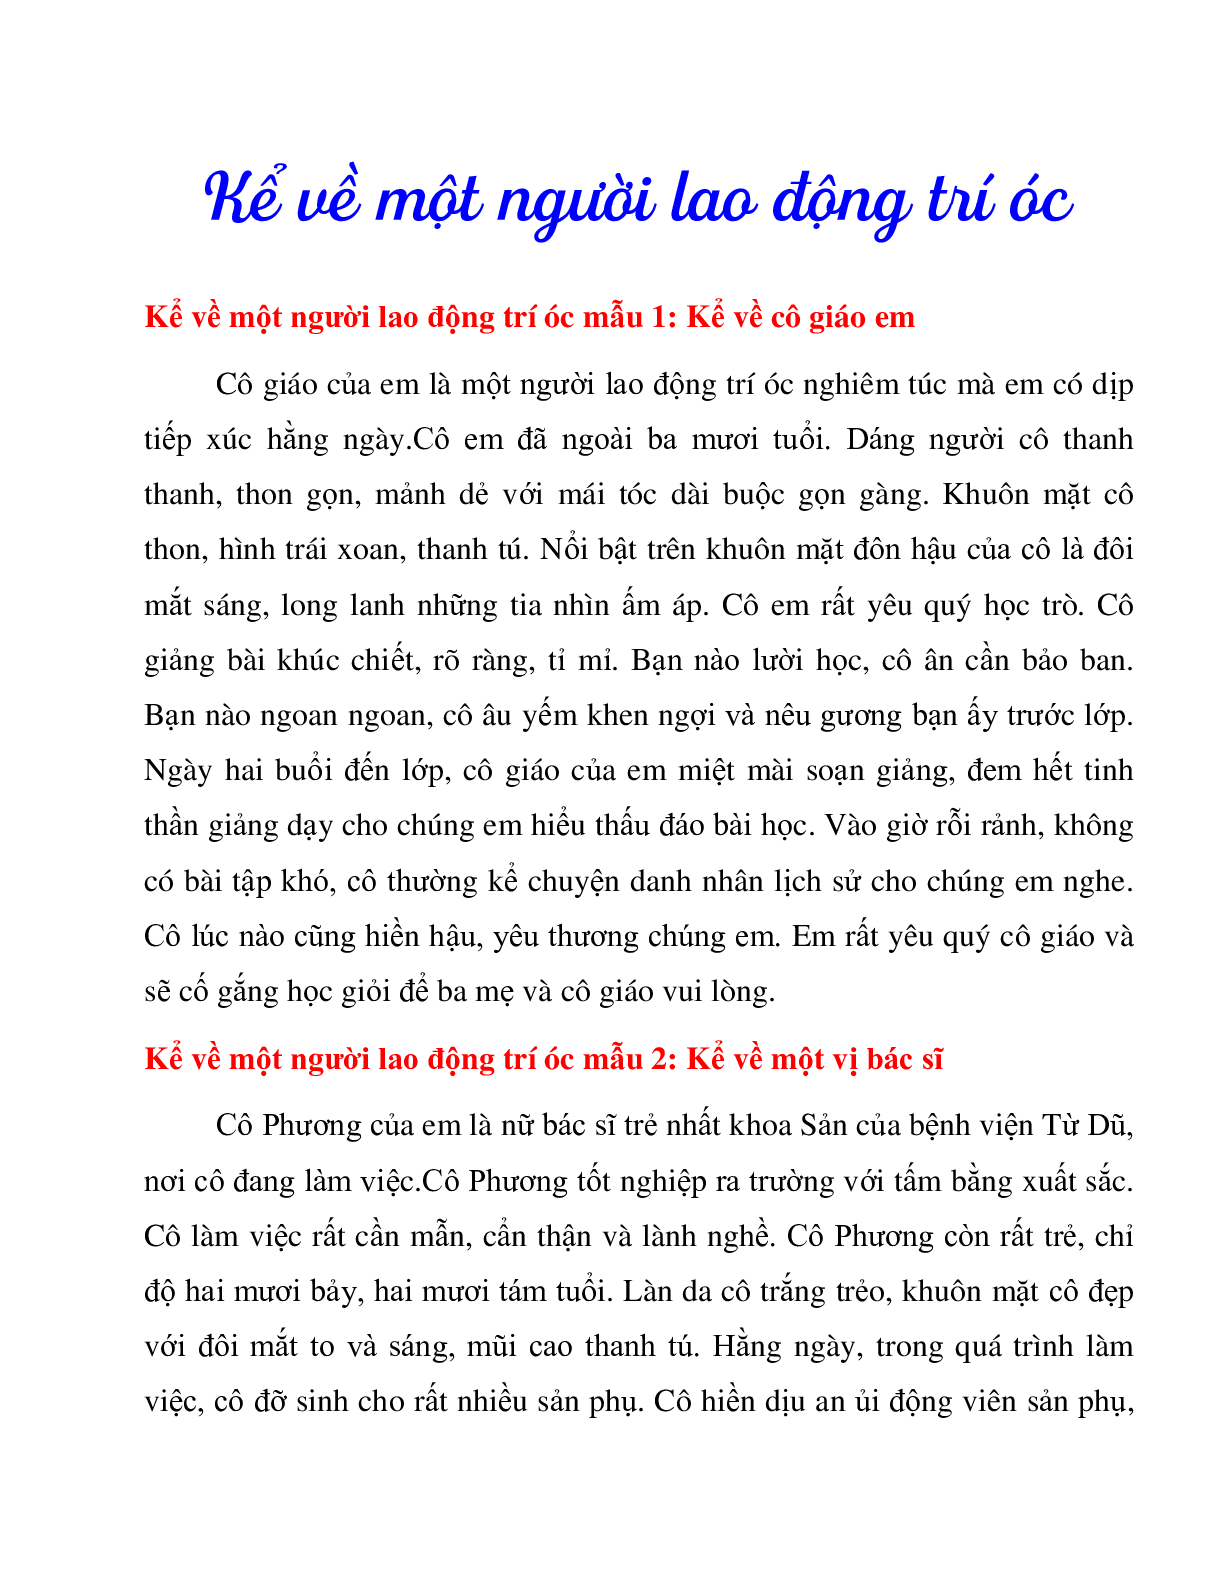 21 bài văn kể về người lao động trí óc môn Tiếng Việt lớp 3 (trang 1)